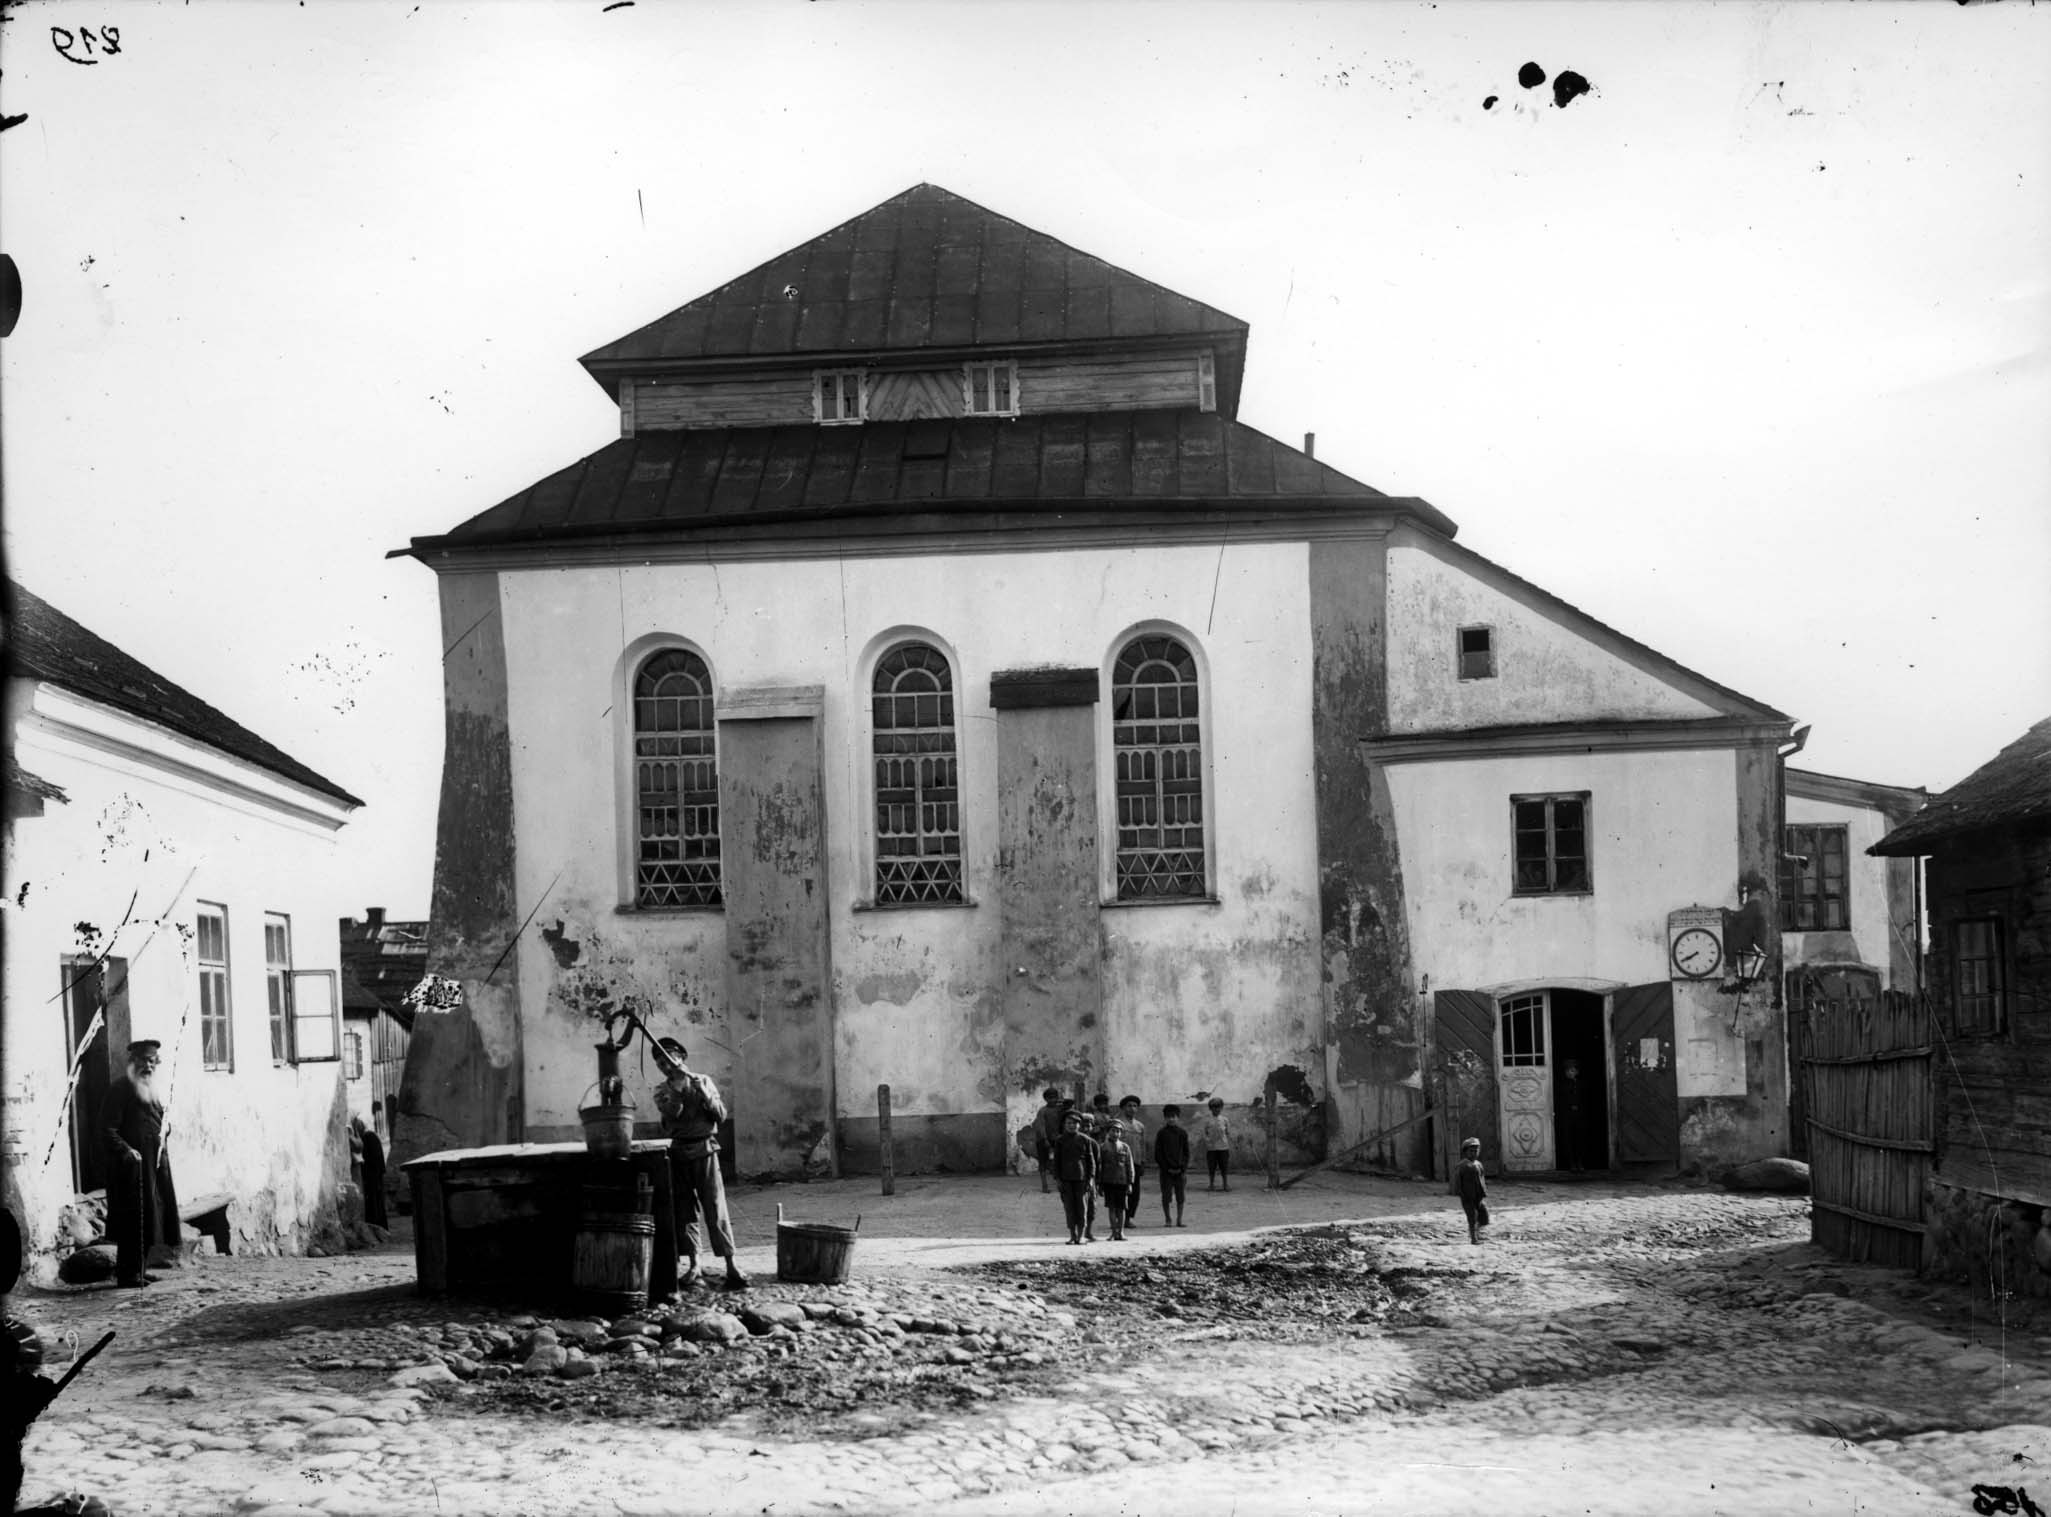 Nieświeź, exterior of a synagogue